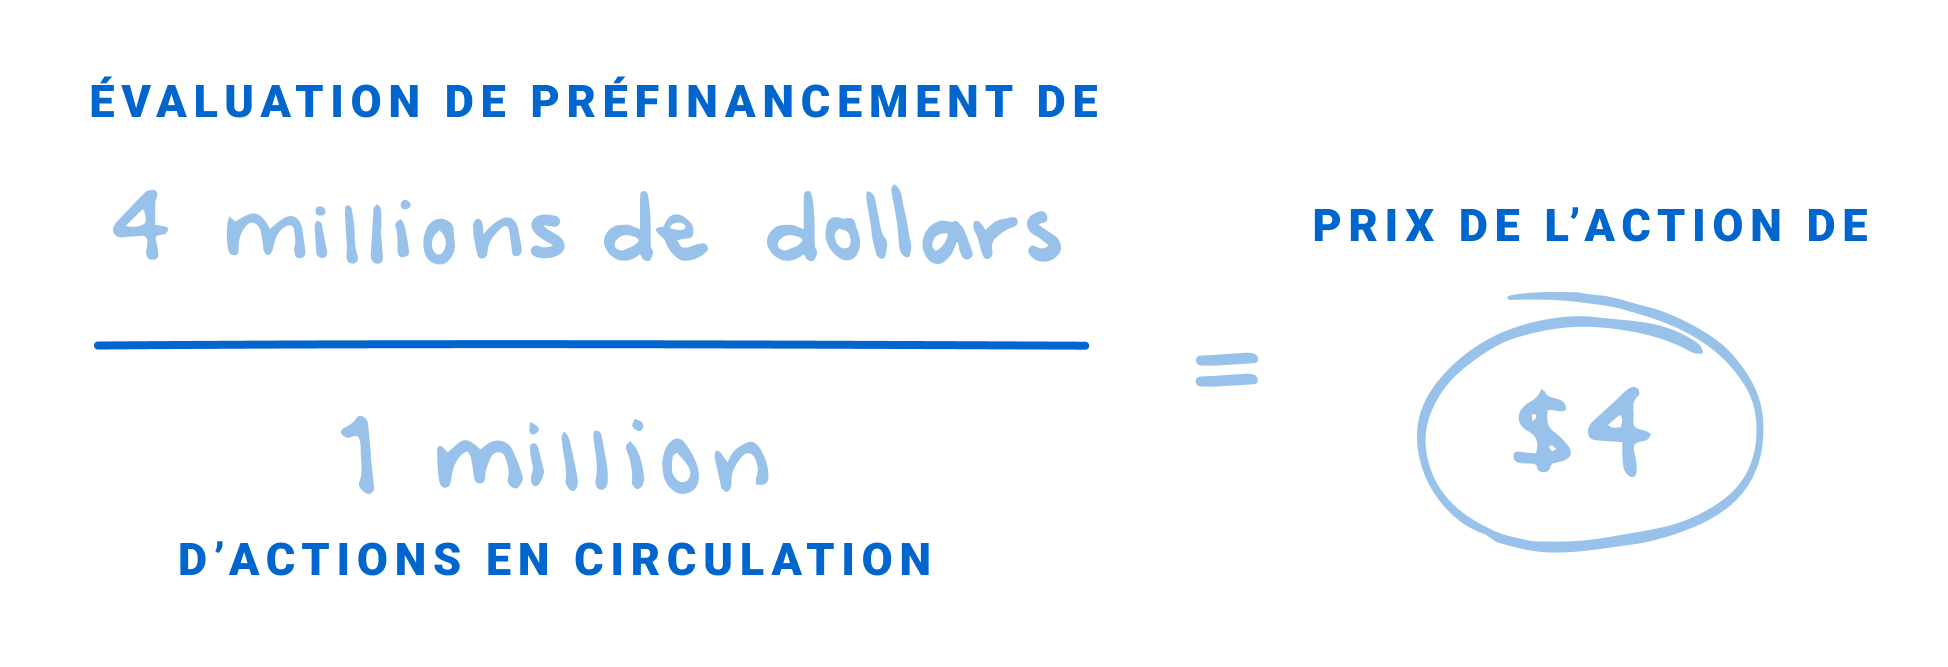 Exemple d’évaluation de préfinancement